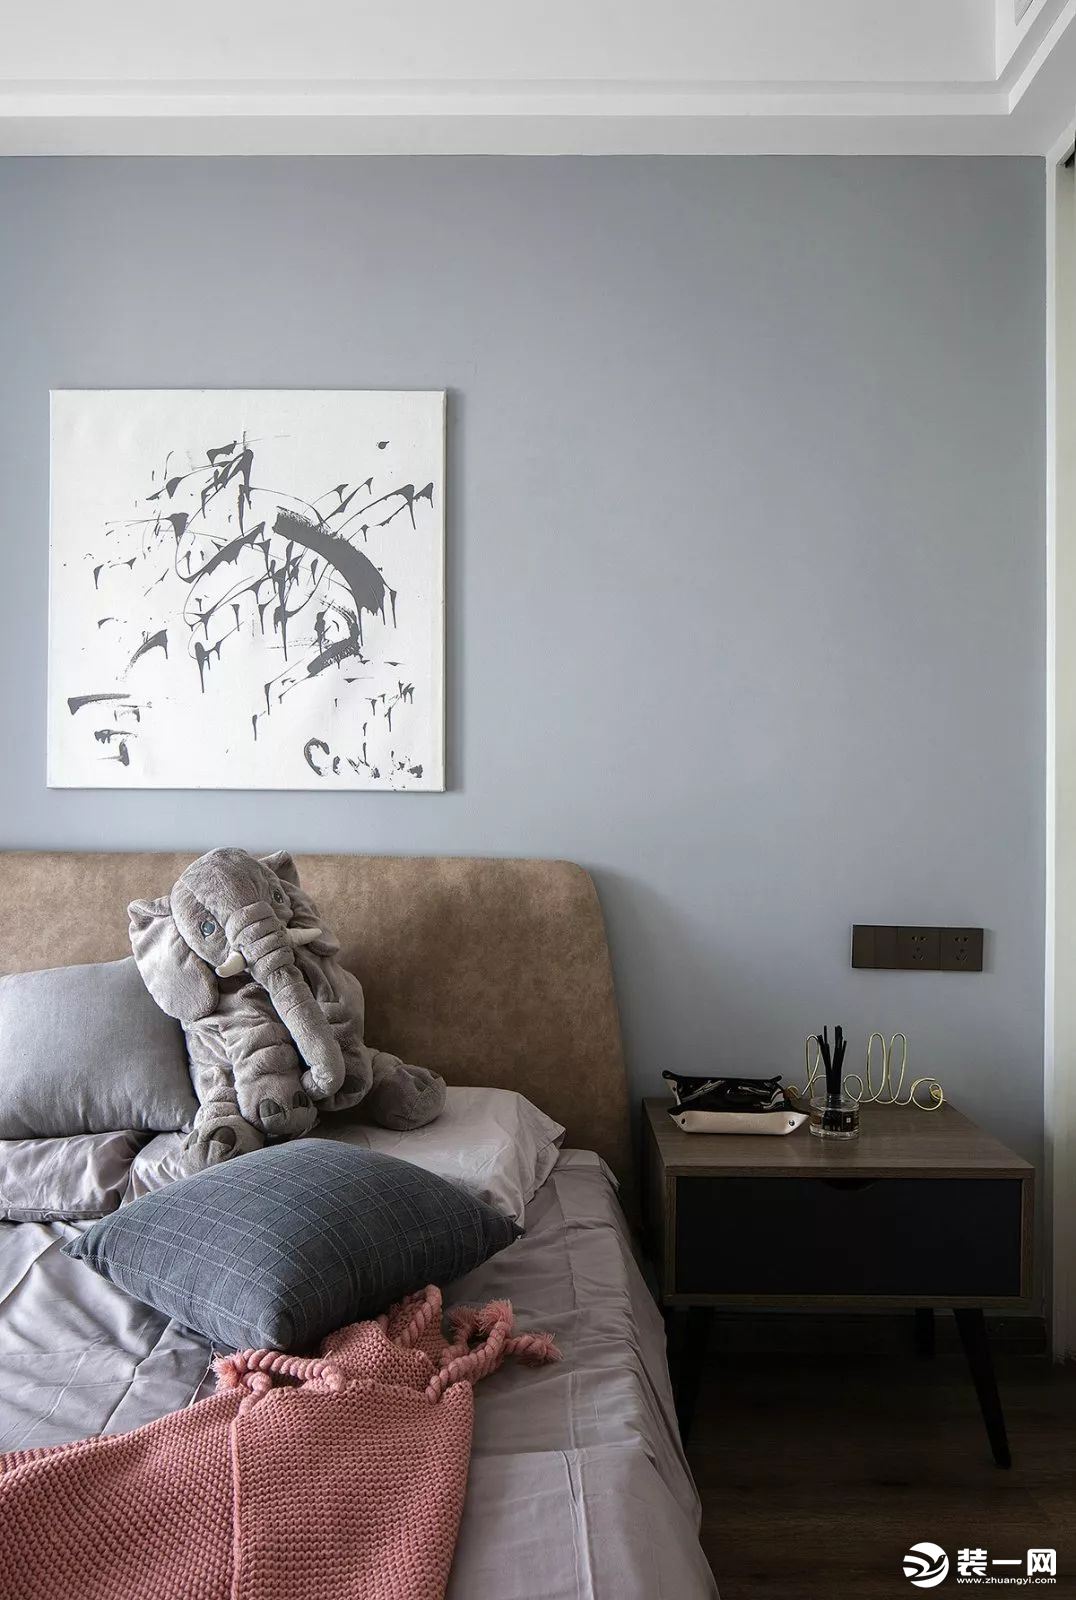 次卧的床头背景墙刷成了蓝灰色，搭配随意极简的装饰画、棕灰色的床头靠背，营造一个轻松松的空间。